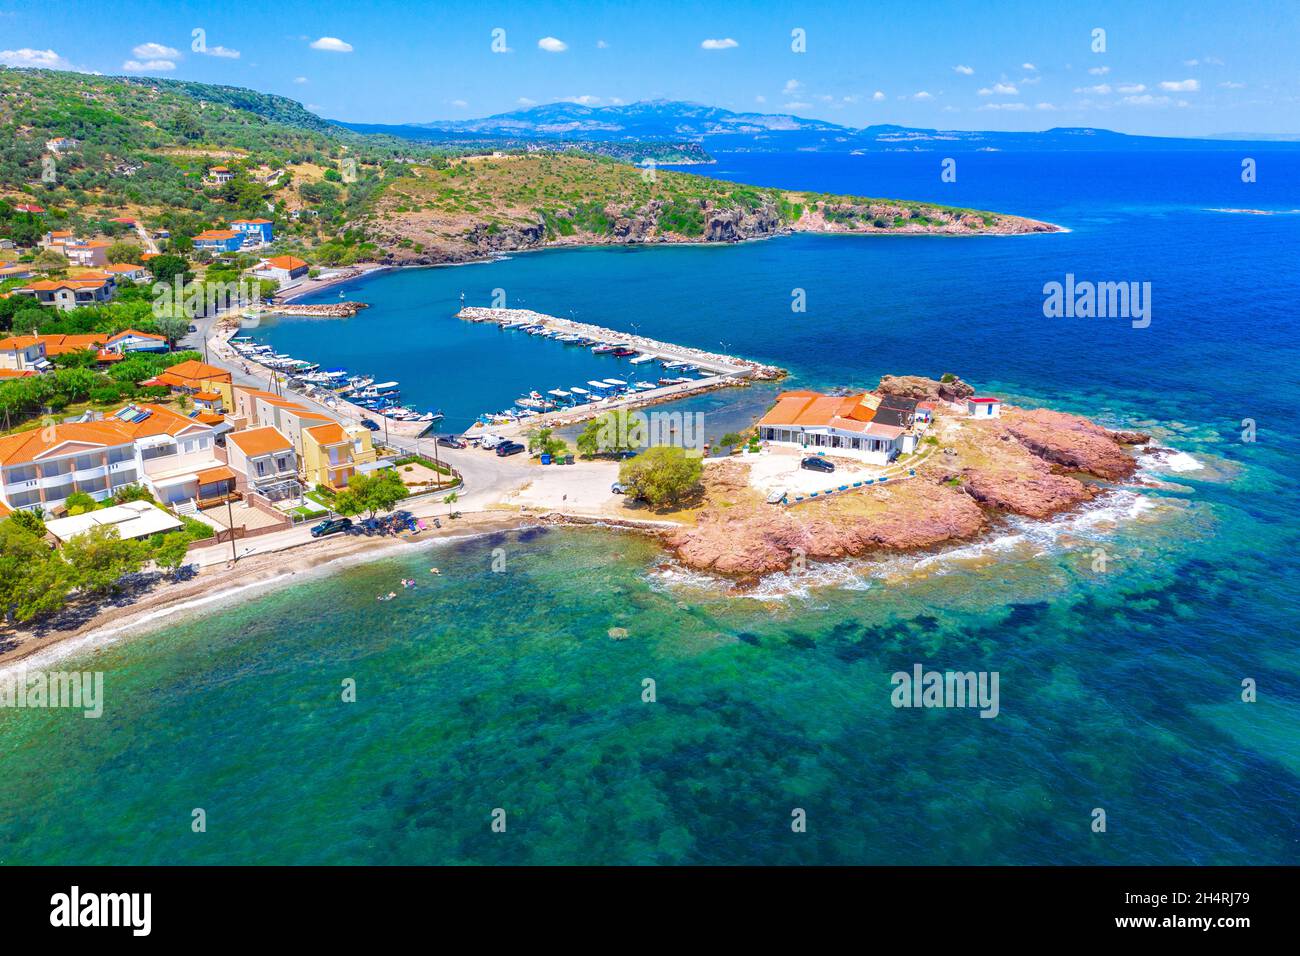 Moni Limonos at the island of Lesvos, Greece. Stock Photo